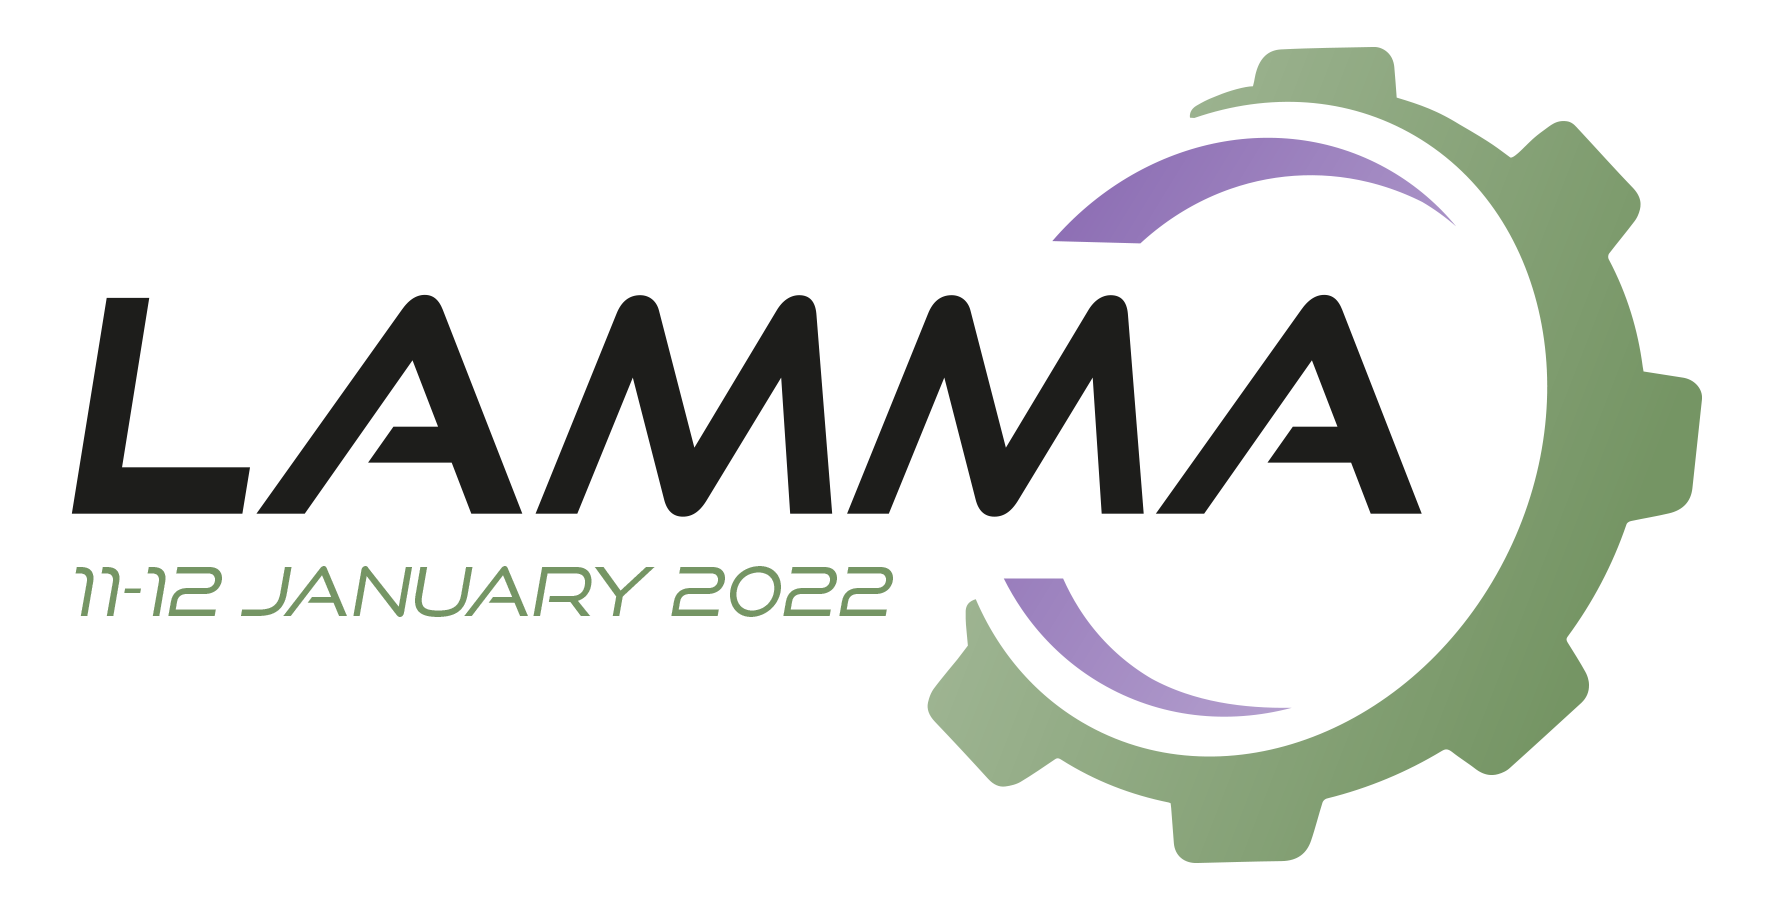 LAMMA Show moves to January 2022 dates